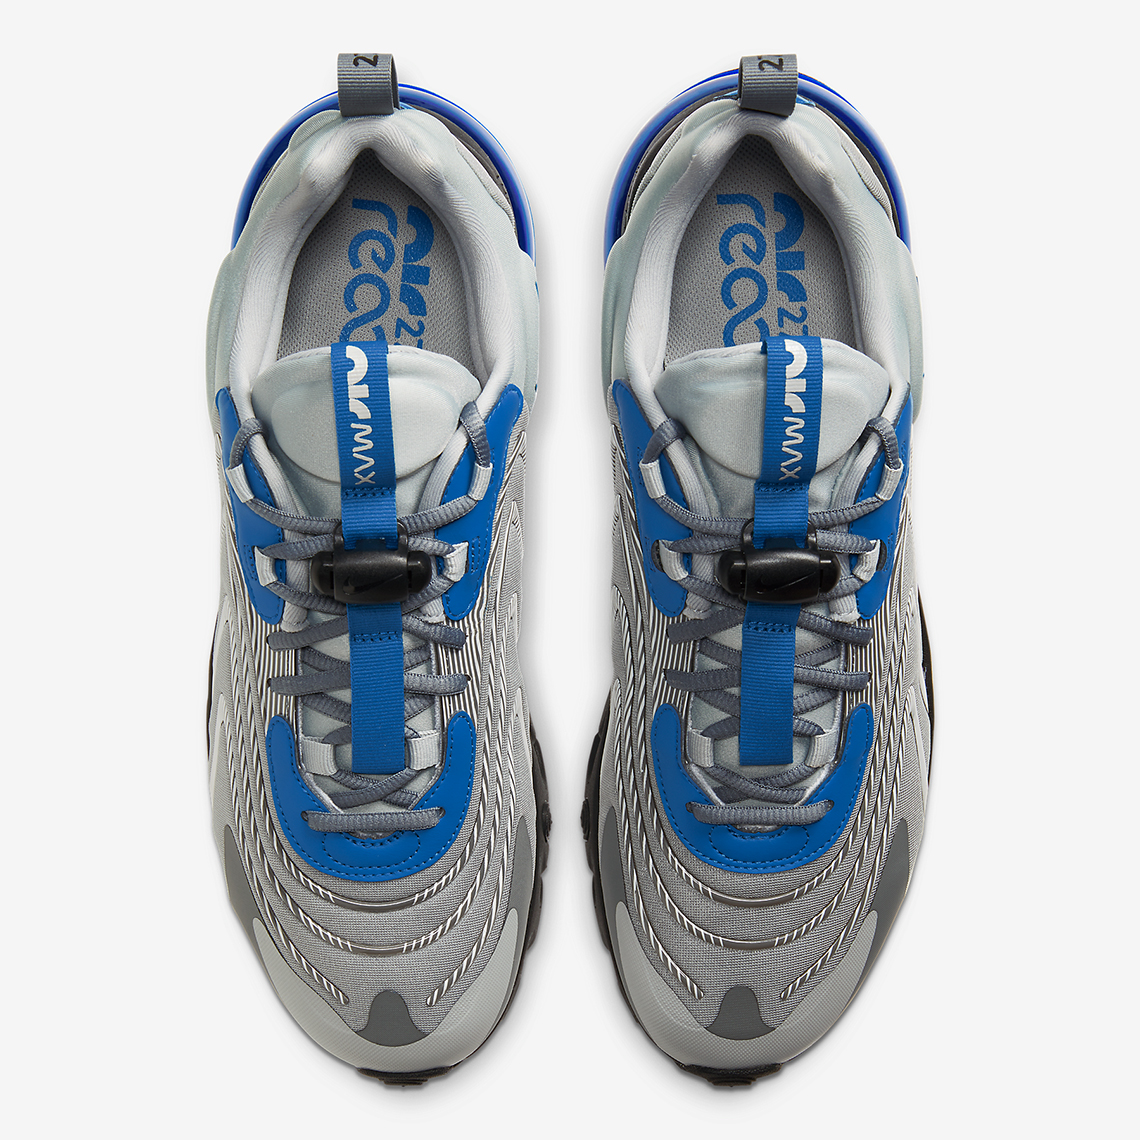 Nike Air Max 270 React Eng Silver Blue Cj0579 001 Sneakernews Com